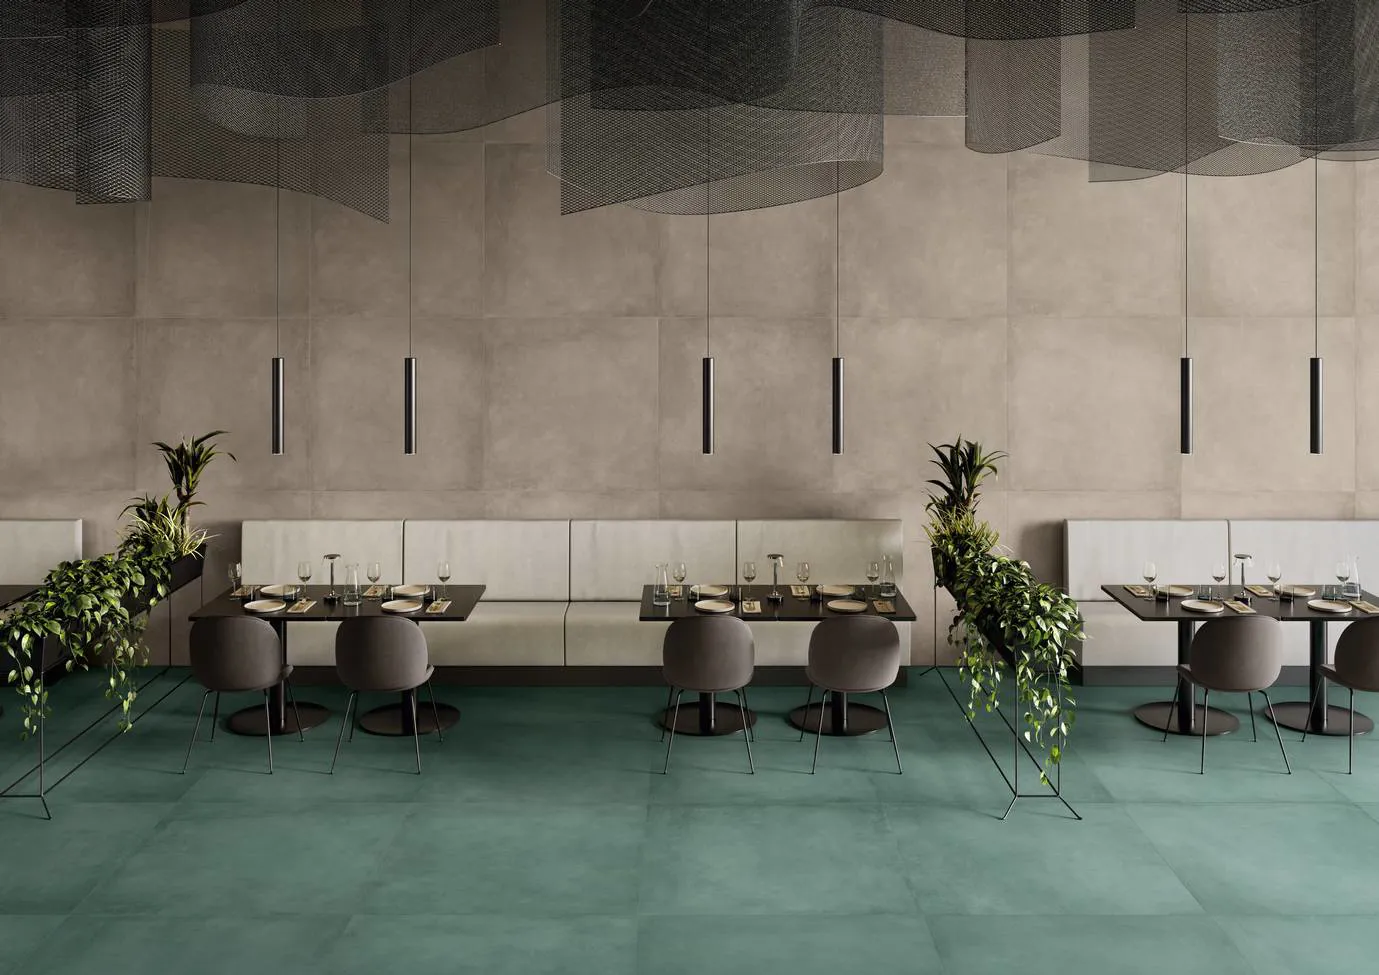 Ristorante sofisticato con pavimento in grès porcellanato effetto metallo della collezione Plate in tonalità Oxyde, arredamento moderno e lampade pendenti, impreziosito da piante verdi.